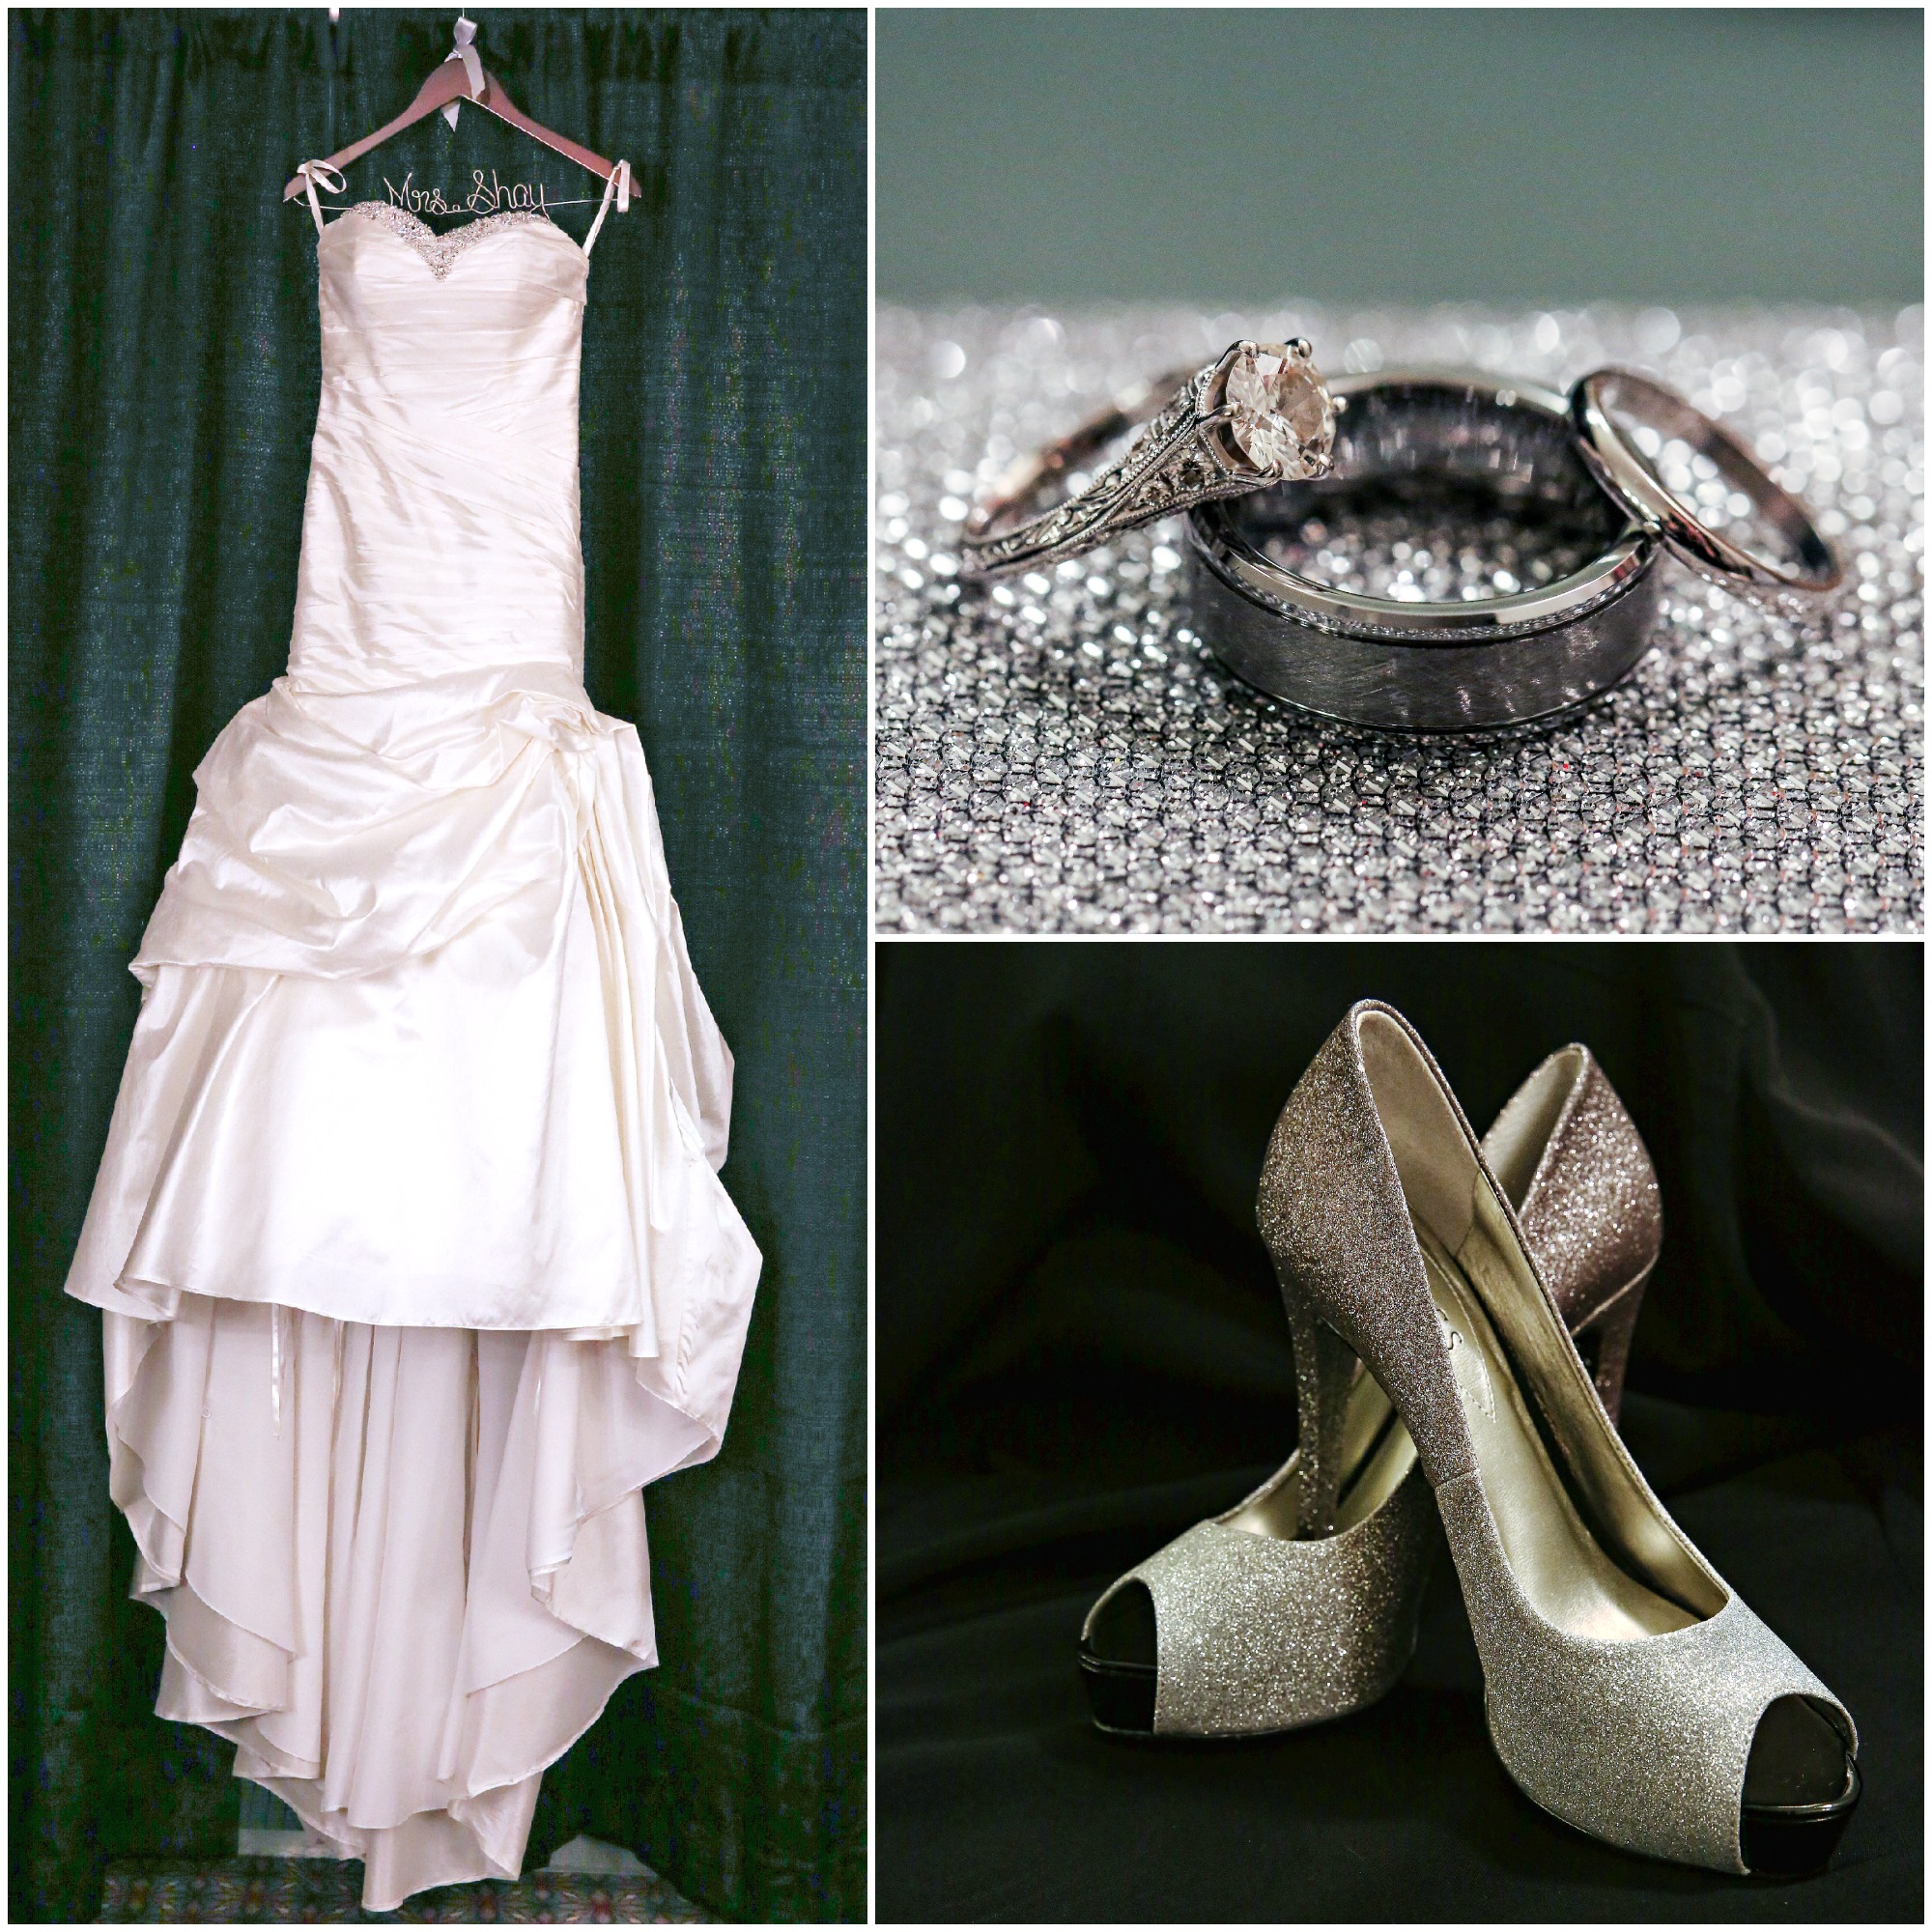 The Bridal Gown, Wedding Rings & Peep Toe Heels